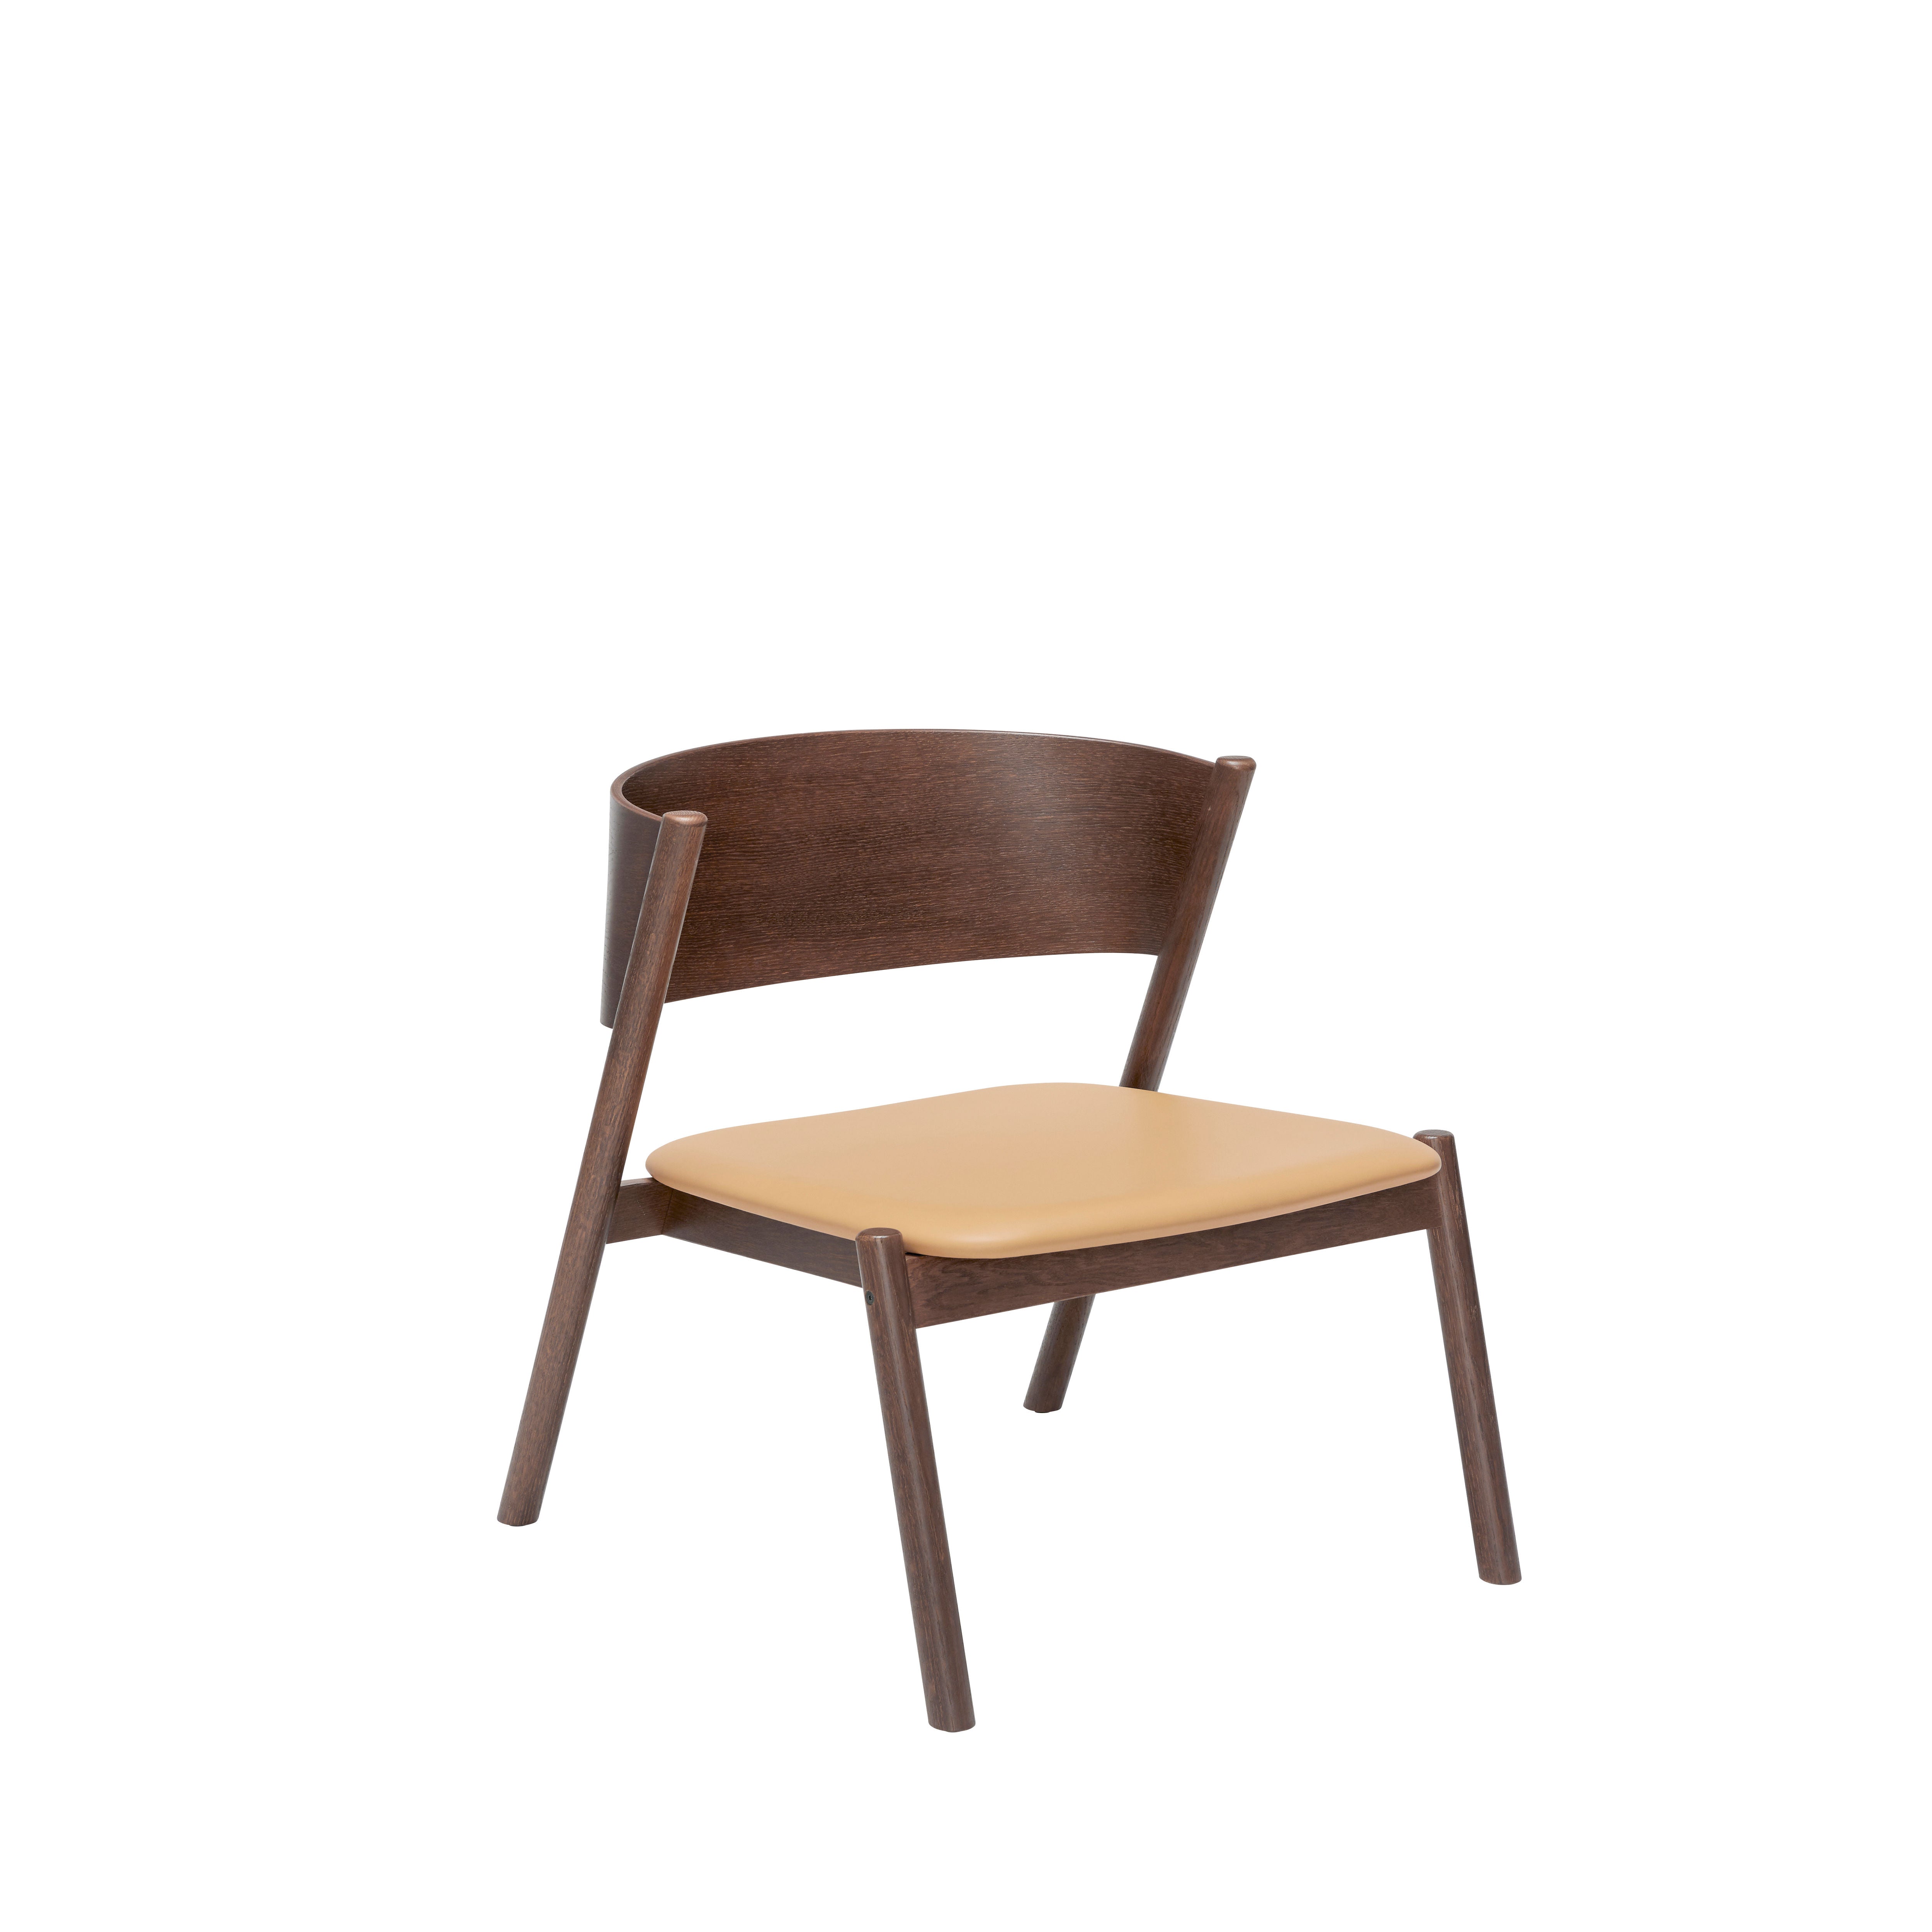 Der Oblique Loungestuhl in dunkelbraunem Holz und cognacfarbenem Anilinleder vereint zeitlose Ästhetik mit nachhaltiger Qualität.